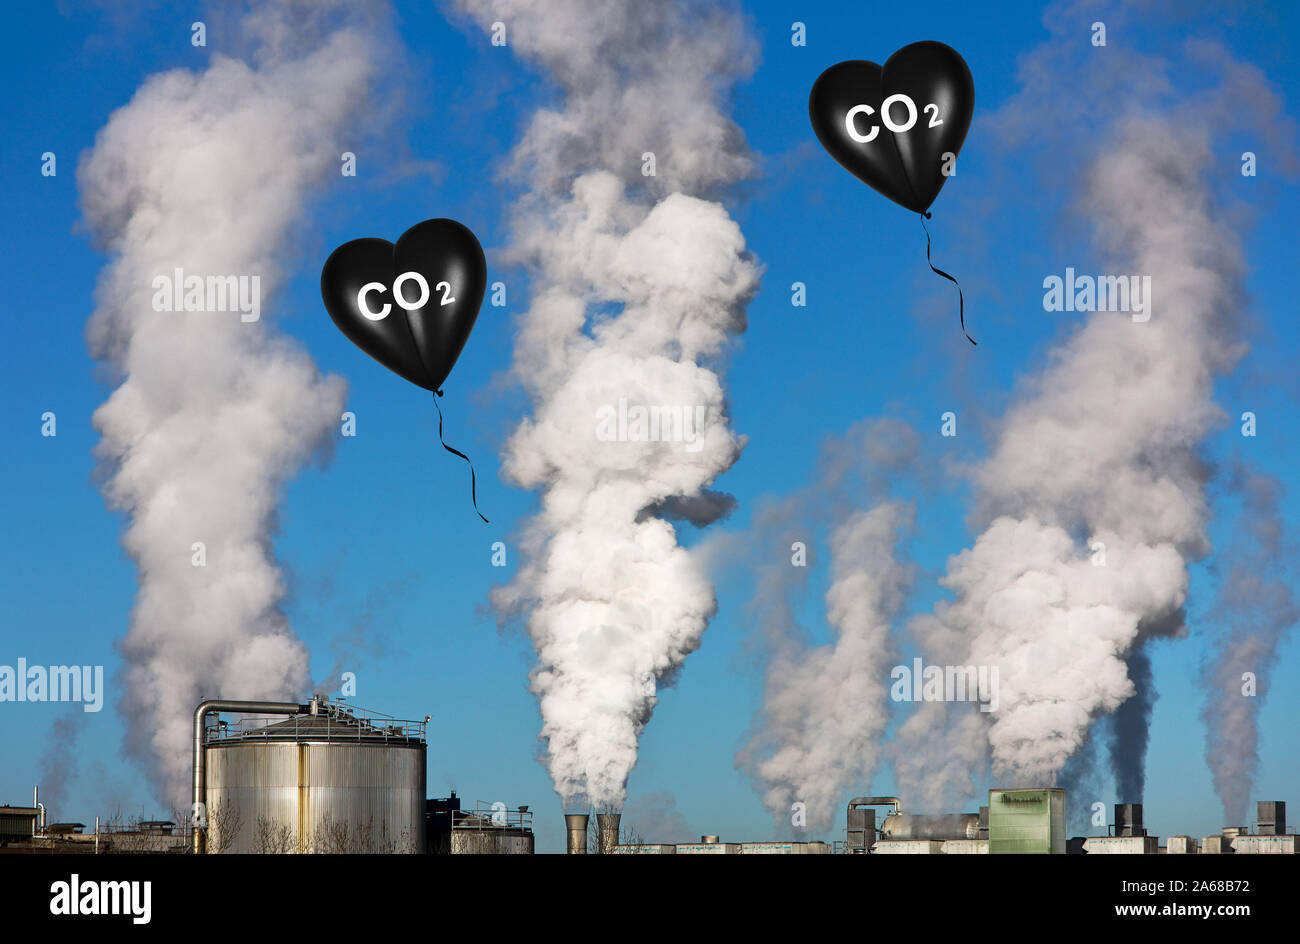 Schwarzes Herz, Luftballon, Herzluftballon, Aufdruck: CO2, Schadstoffe, unbrennbar, Gas, Atemluft, Erkrankung, Umwelt, Schadstoffausstoss, Umweltversc Stock Photo